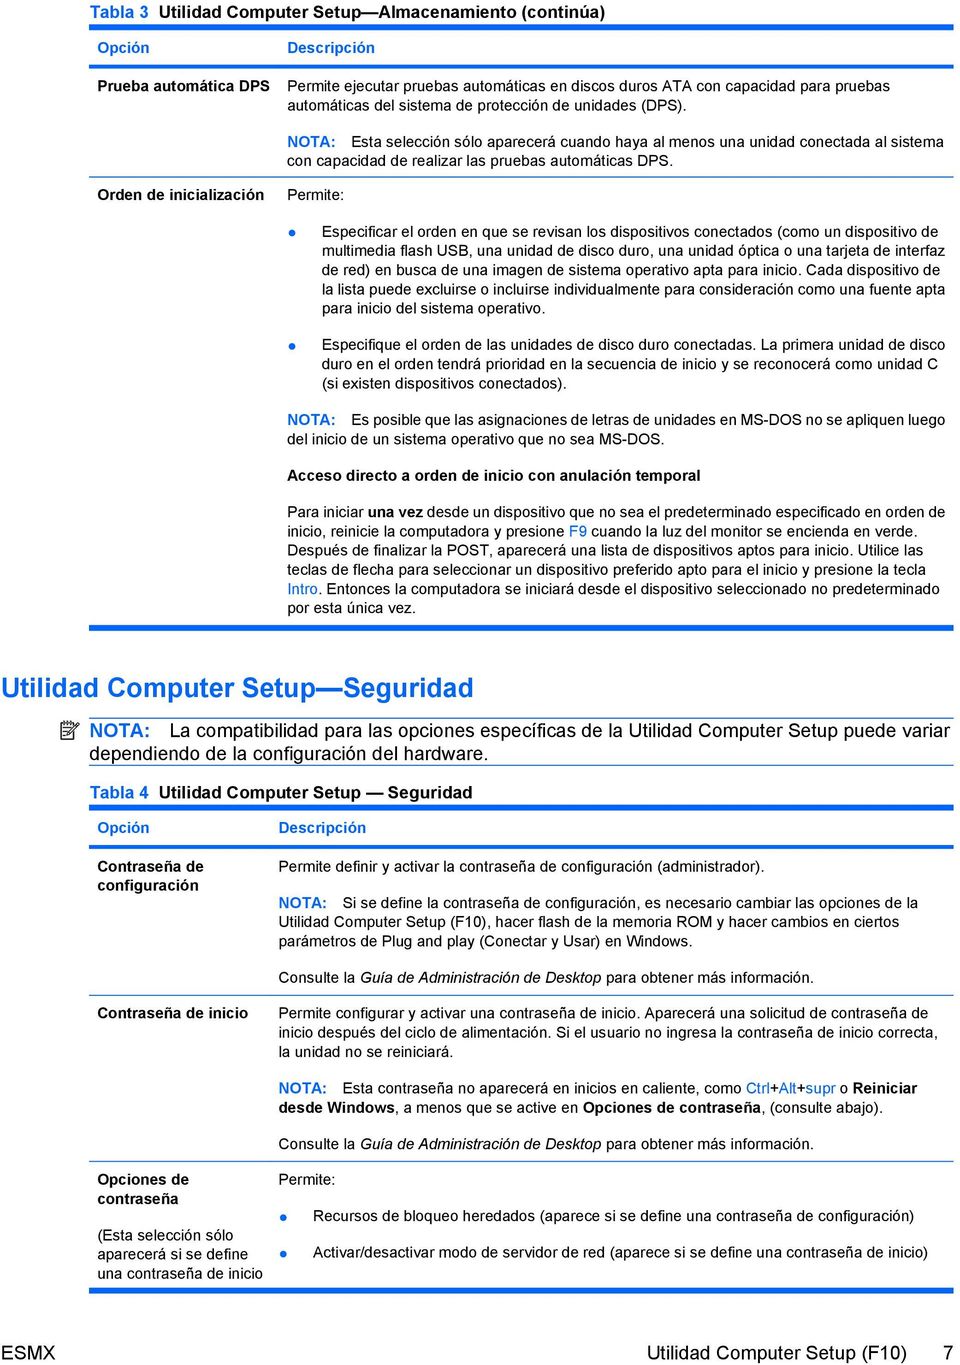 Orden de inicialización Permite: Especificar el orden en que se revisan los dispositivos conectados (como un dispositivo de multimedia flash USB, una unidad de disco duro, una unidad óptica o una